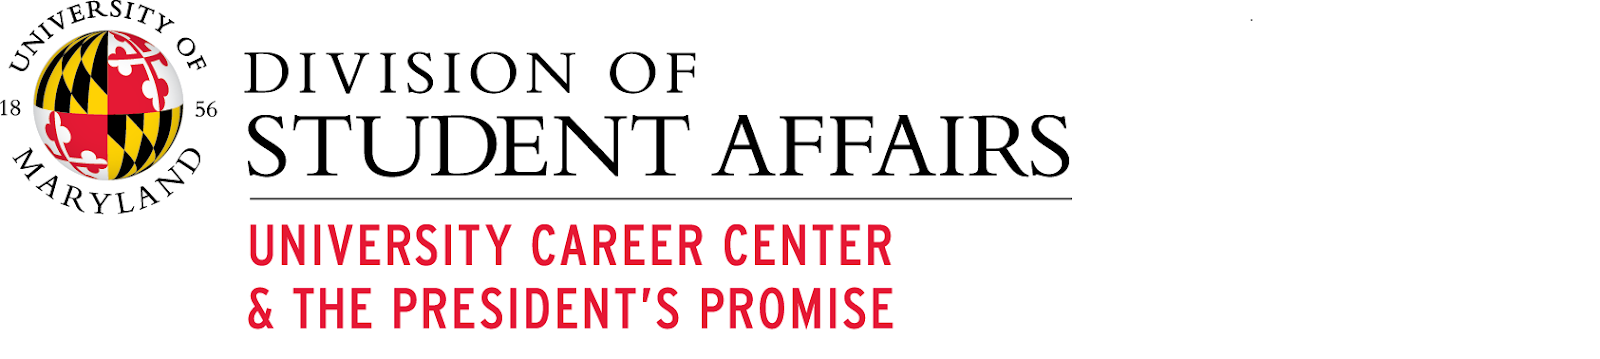 University Career Center & The President's Promise logo